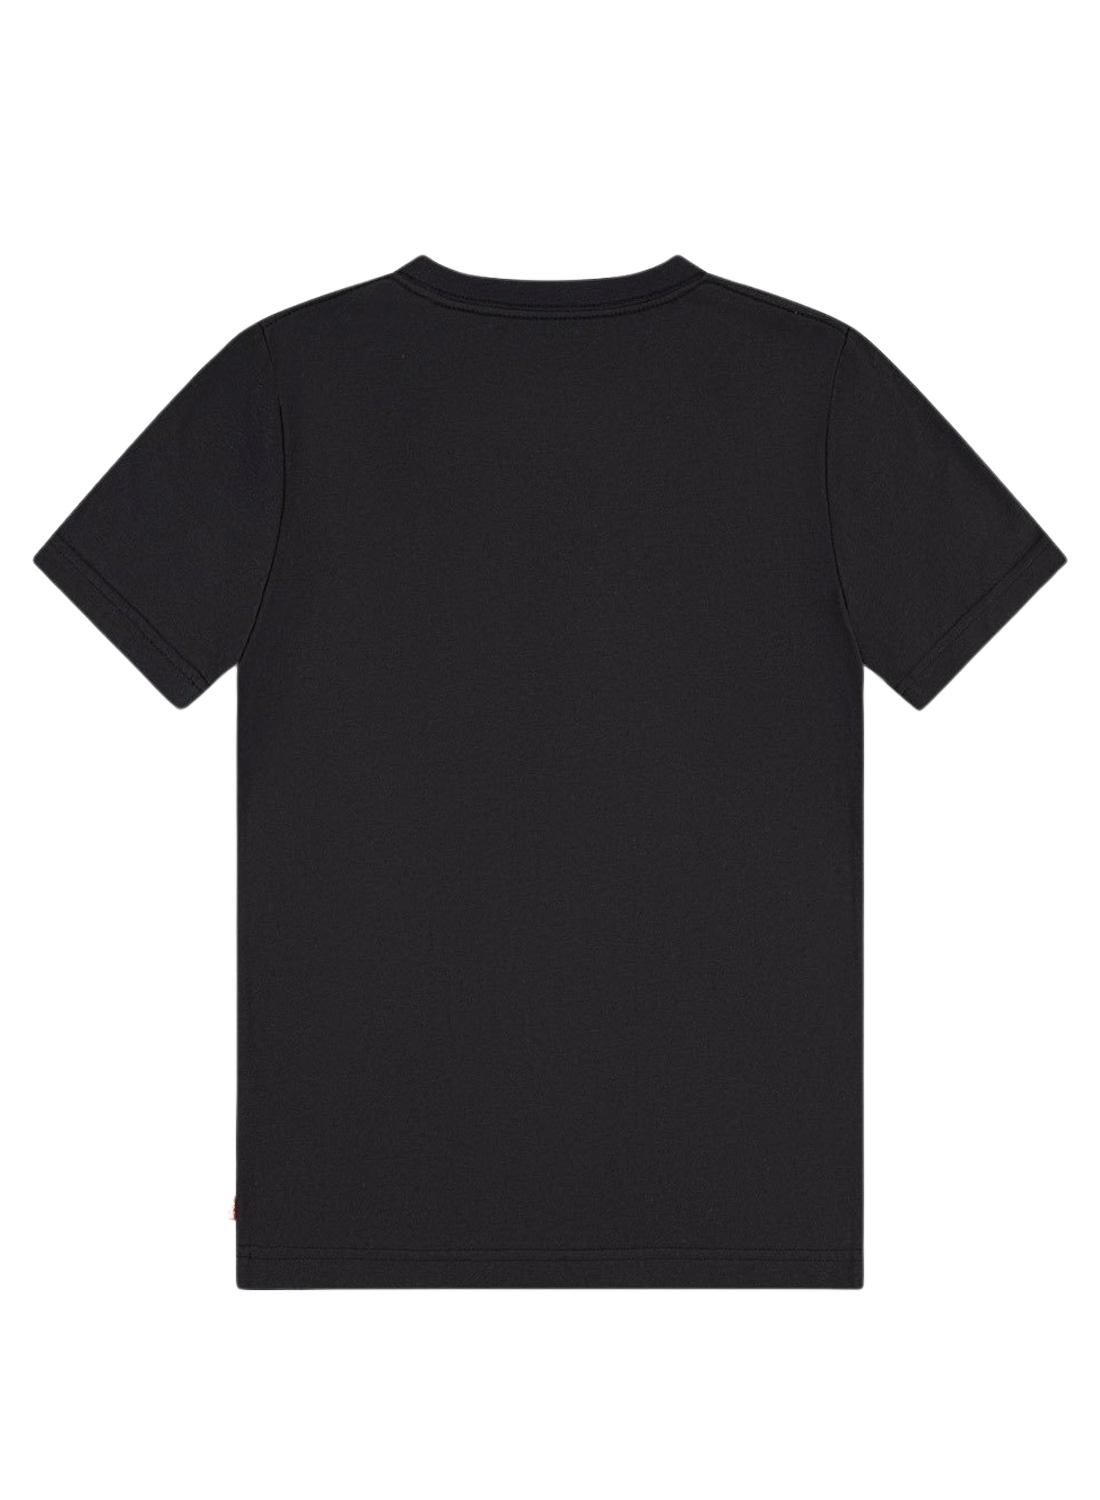 T-Shirt Levis Il mio preferito Nero per Bambino